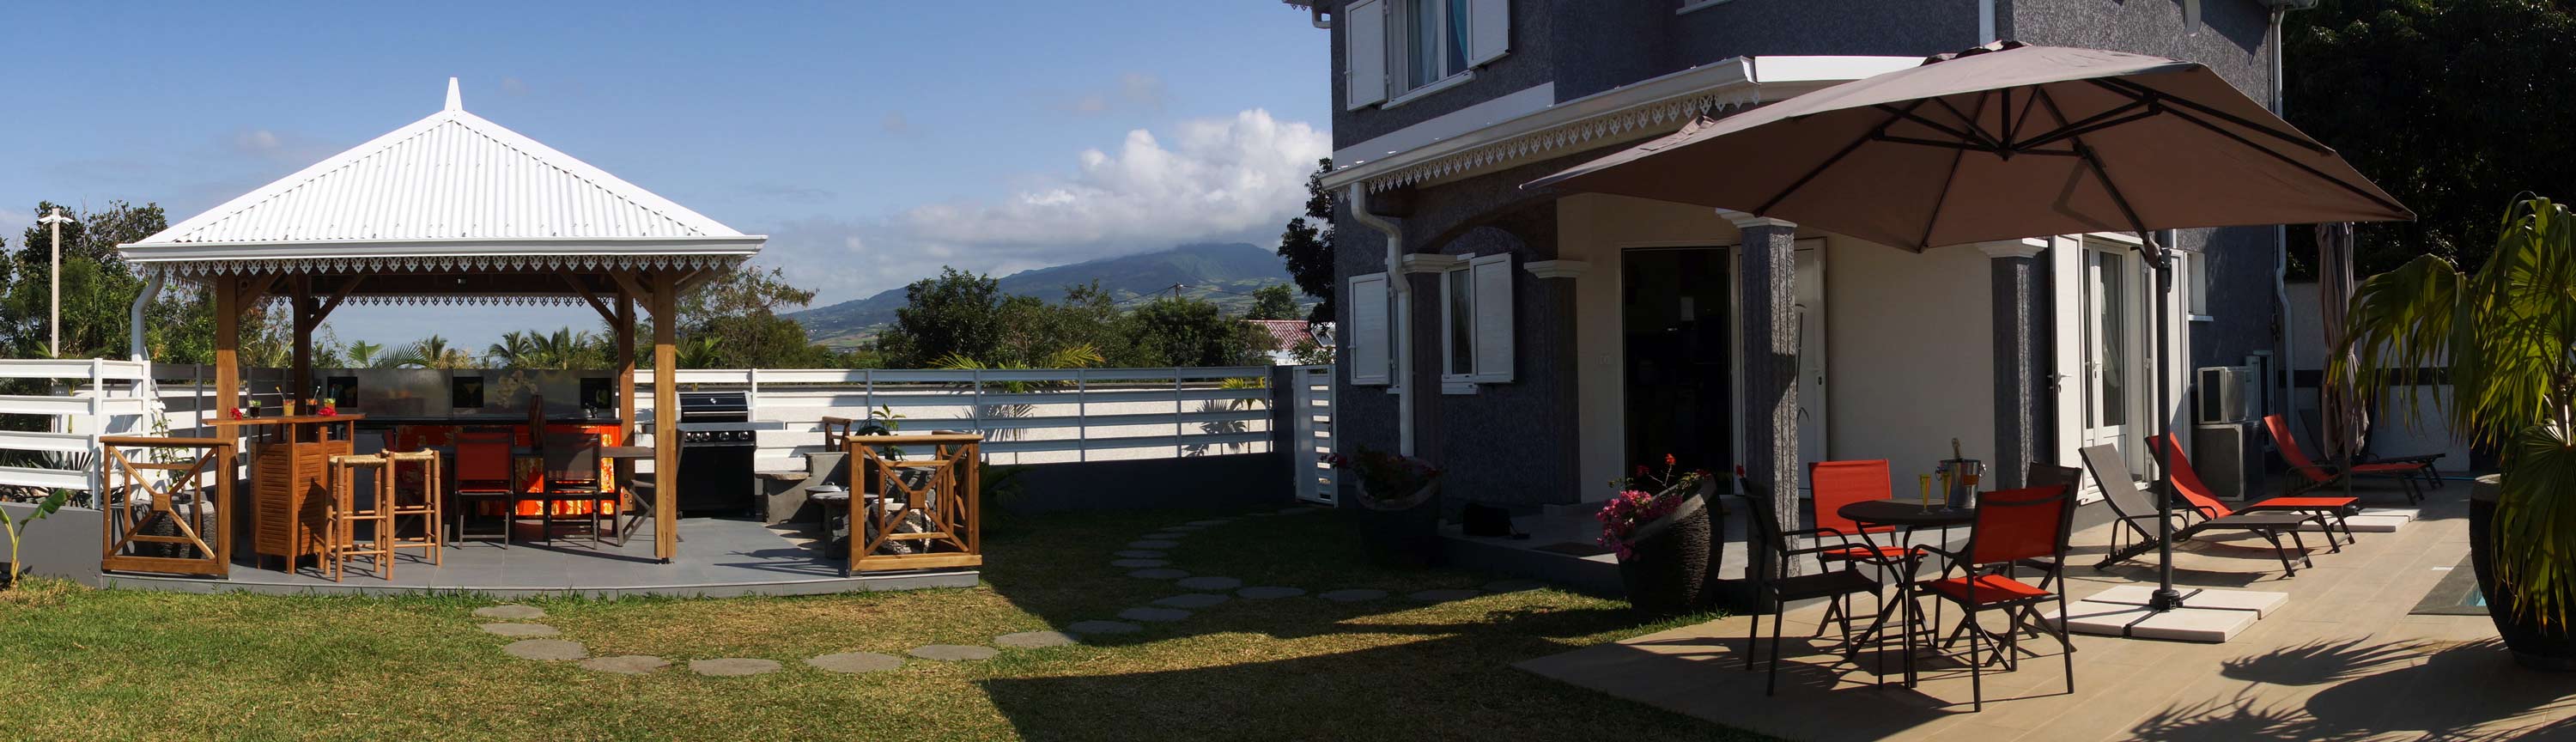 4-Location maison saisonniere vacances la Réunion 974